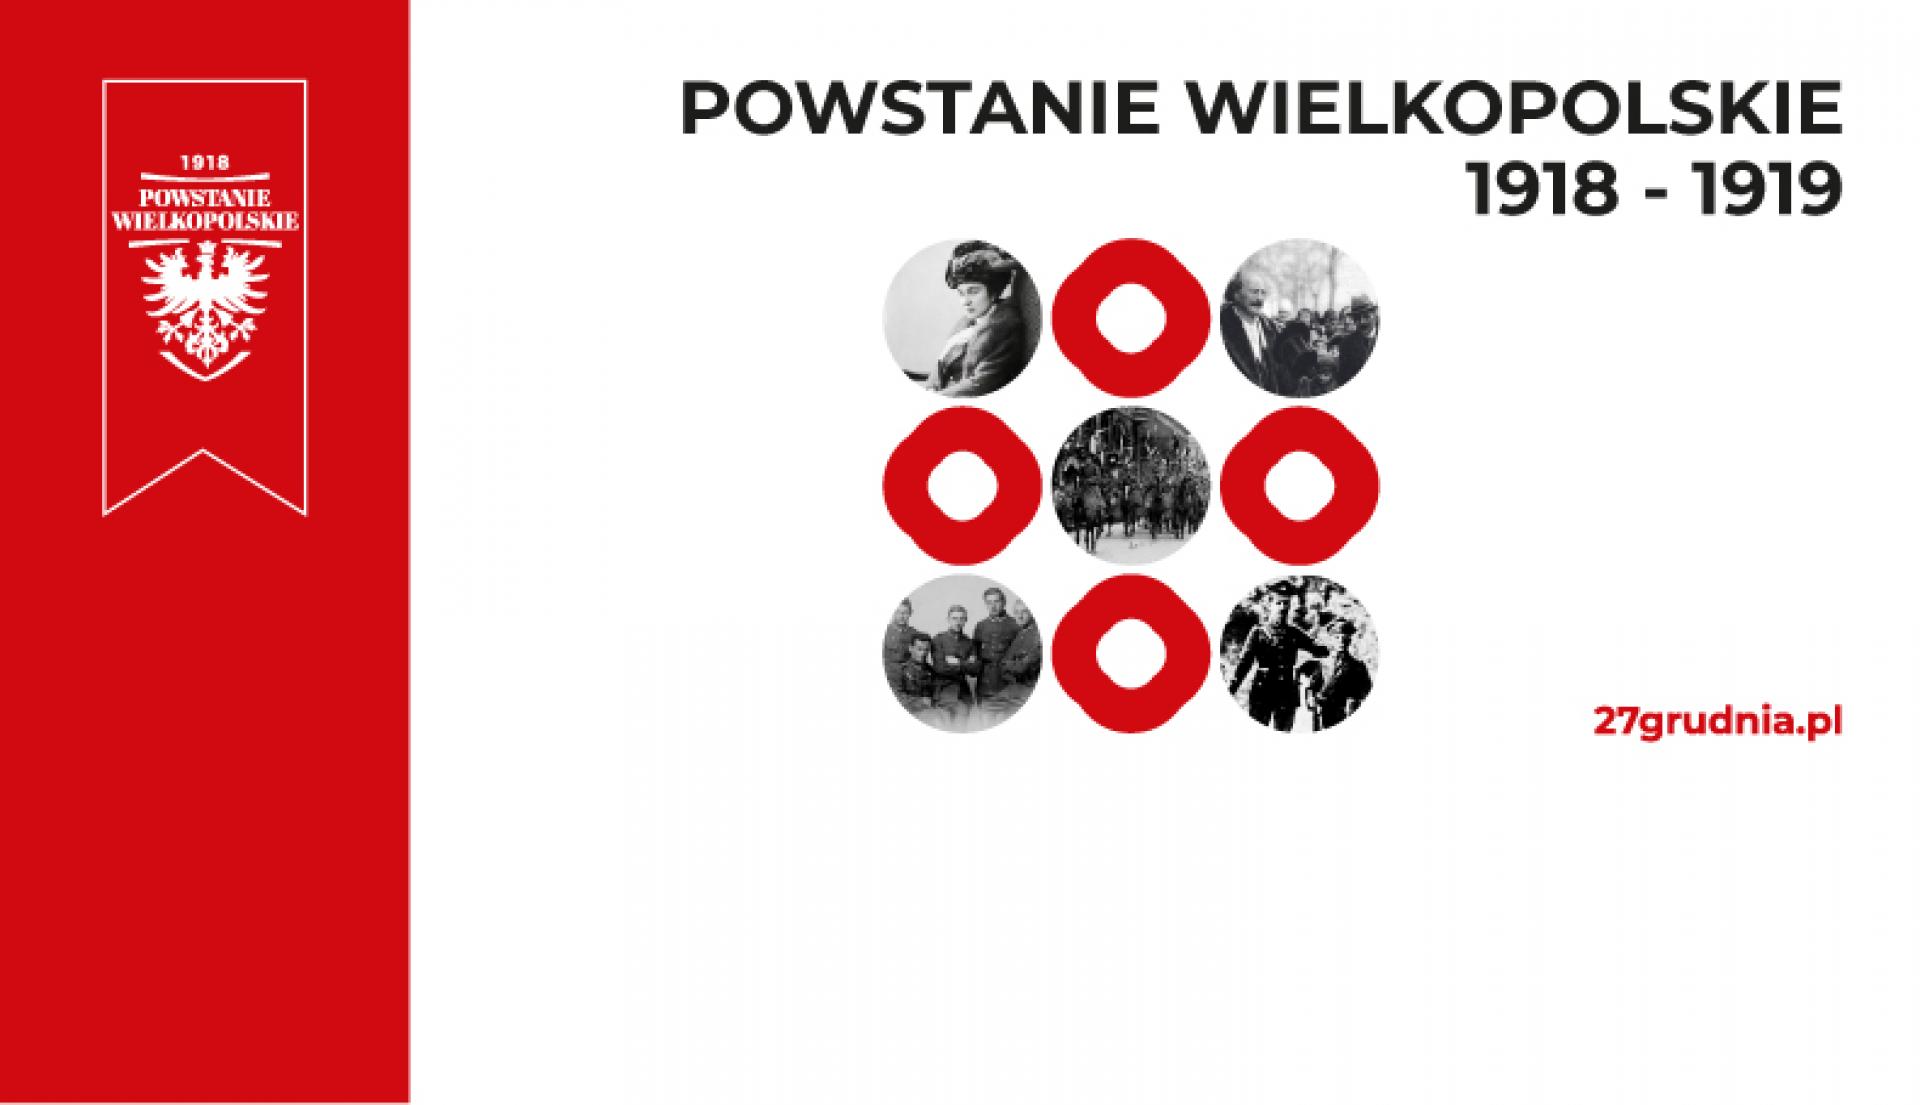 Oddajmy hołd bohaterom zwycięskiego Powstania Wielkopolskiego 1918/1919 - zobacz więcej